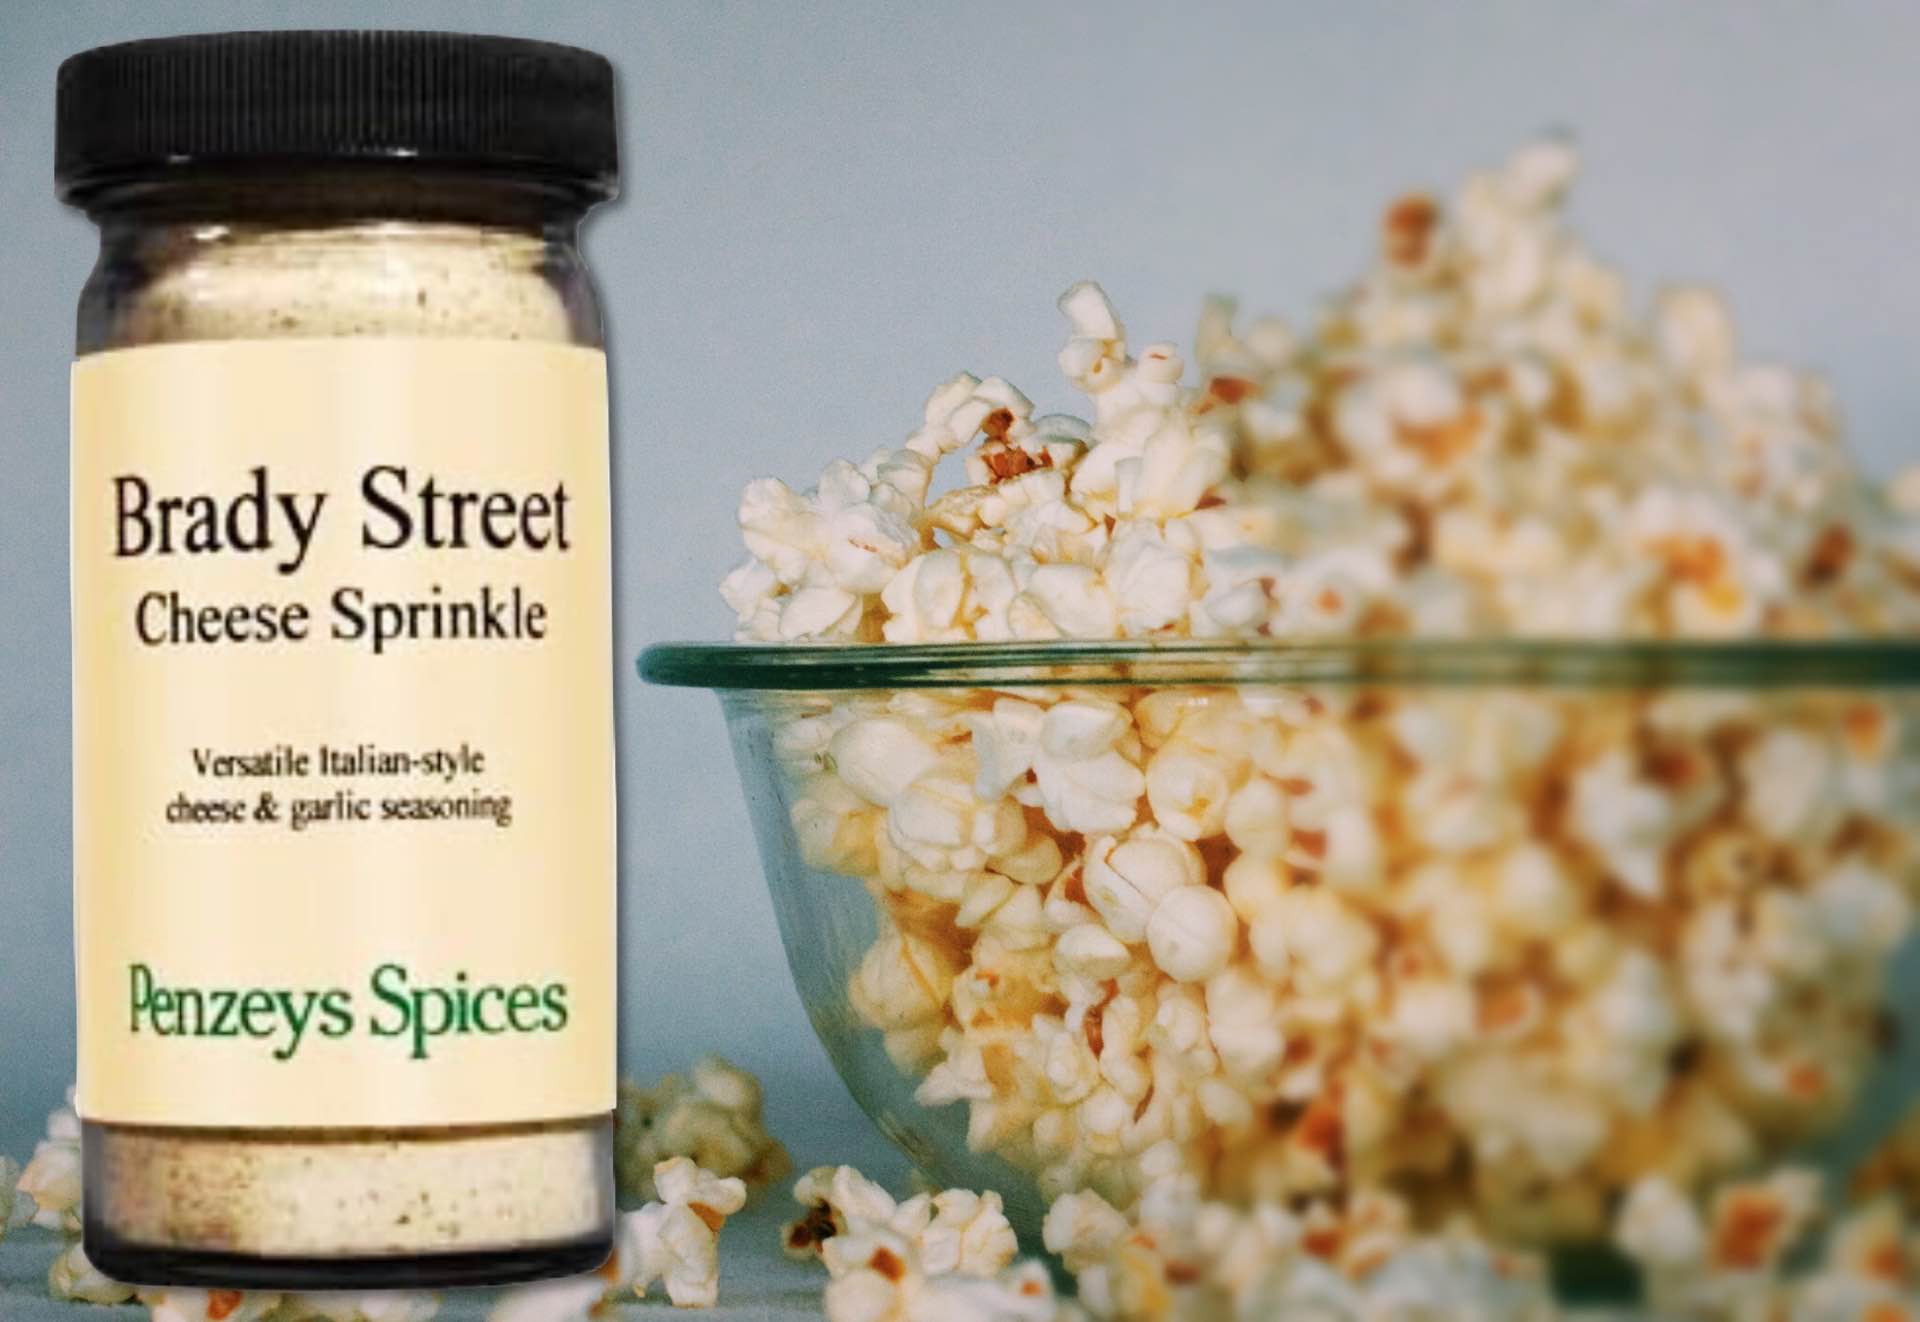 penzeys-spices-brady-street-cheese-sprinkle